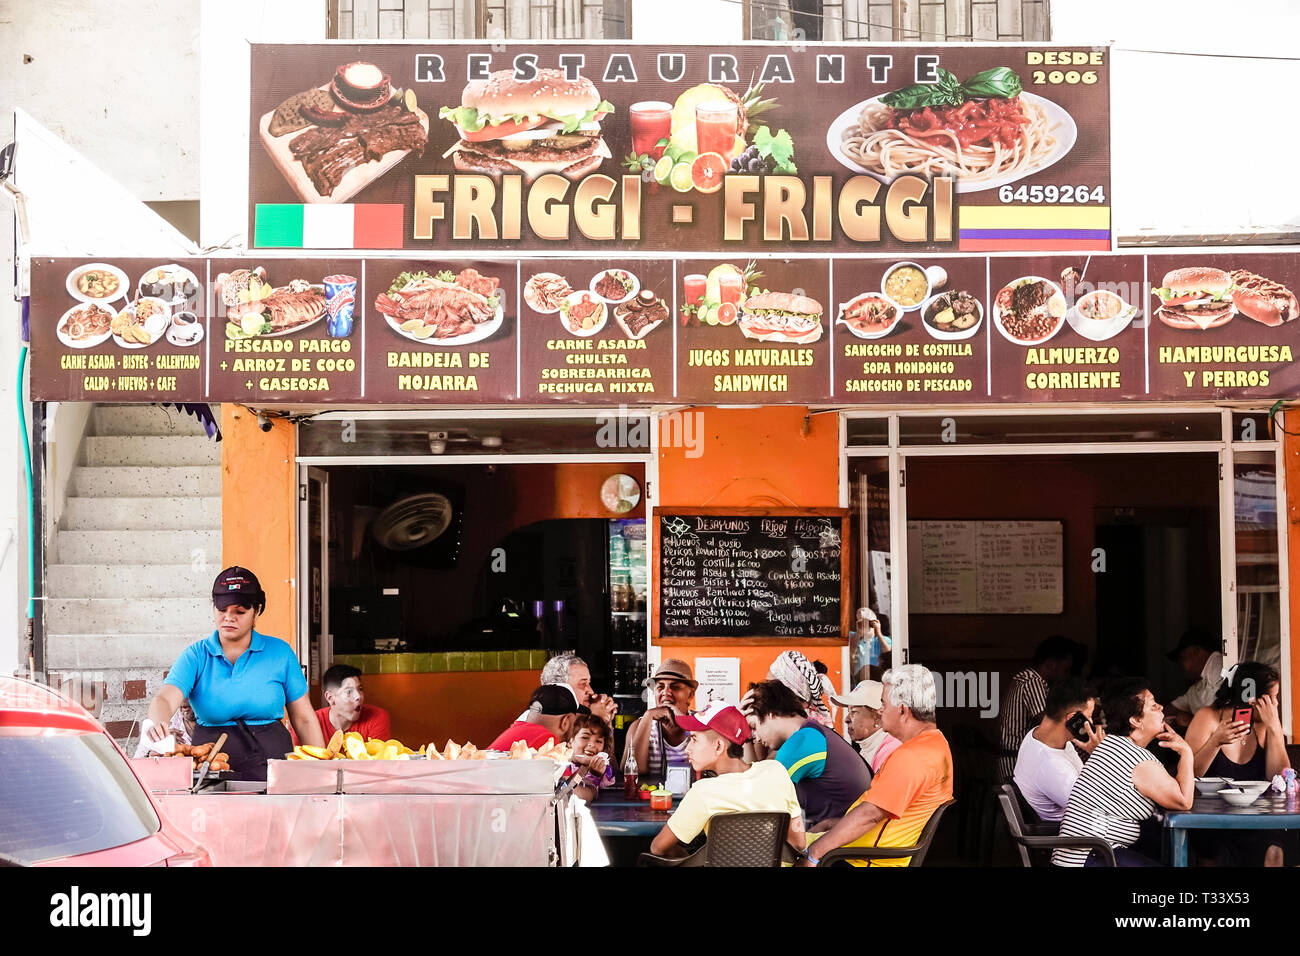 Cartagena Colombia,Bocagrande,Restaurante Friggi-Friggi,restaurante restaurantes comida comedor café cafés,menú de fotos,rústico,comedor,mujer mujer mujer mujer,wa Foto de stock